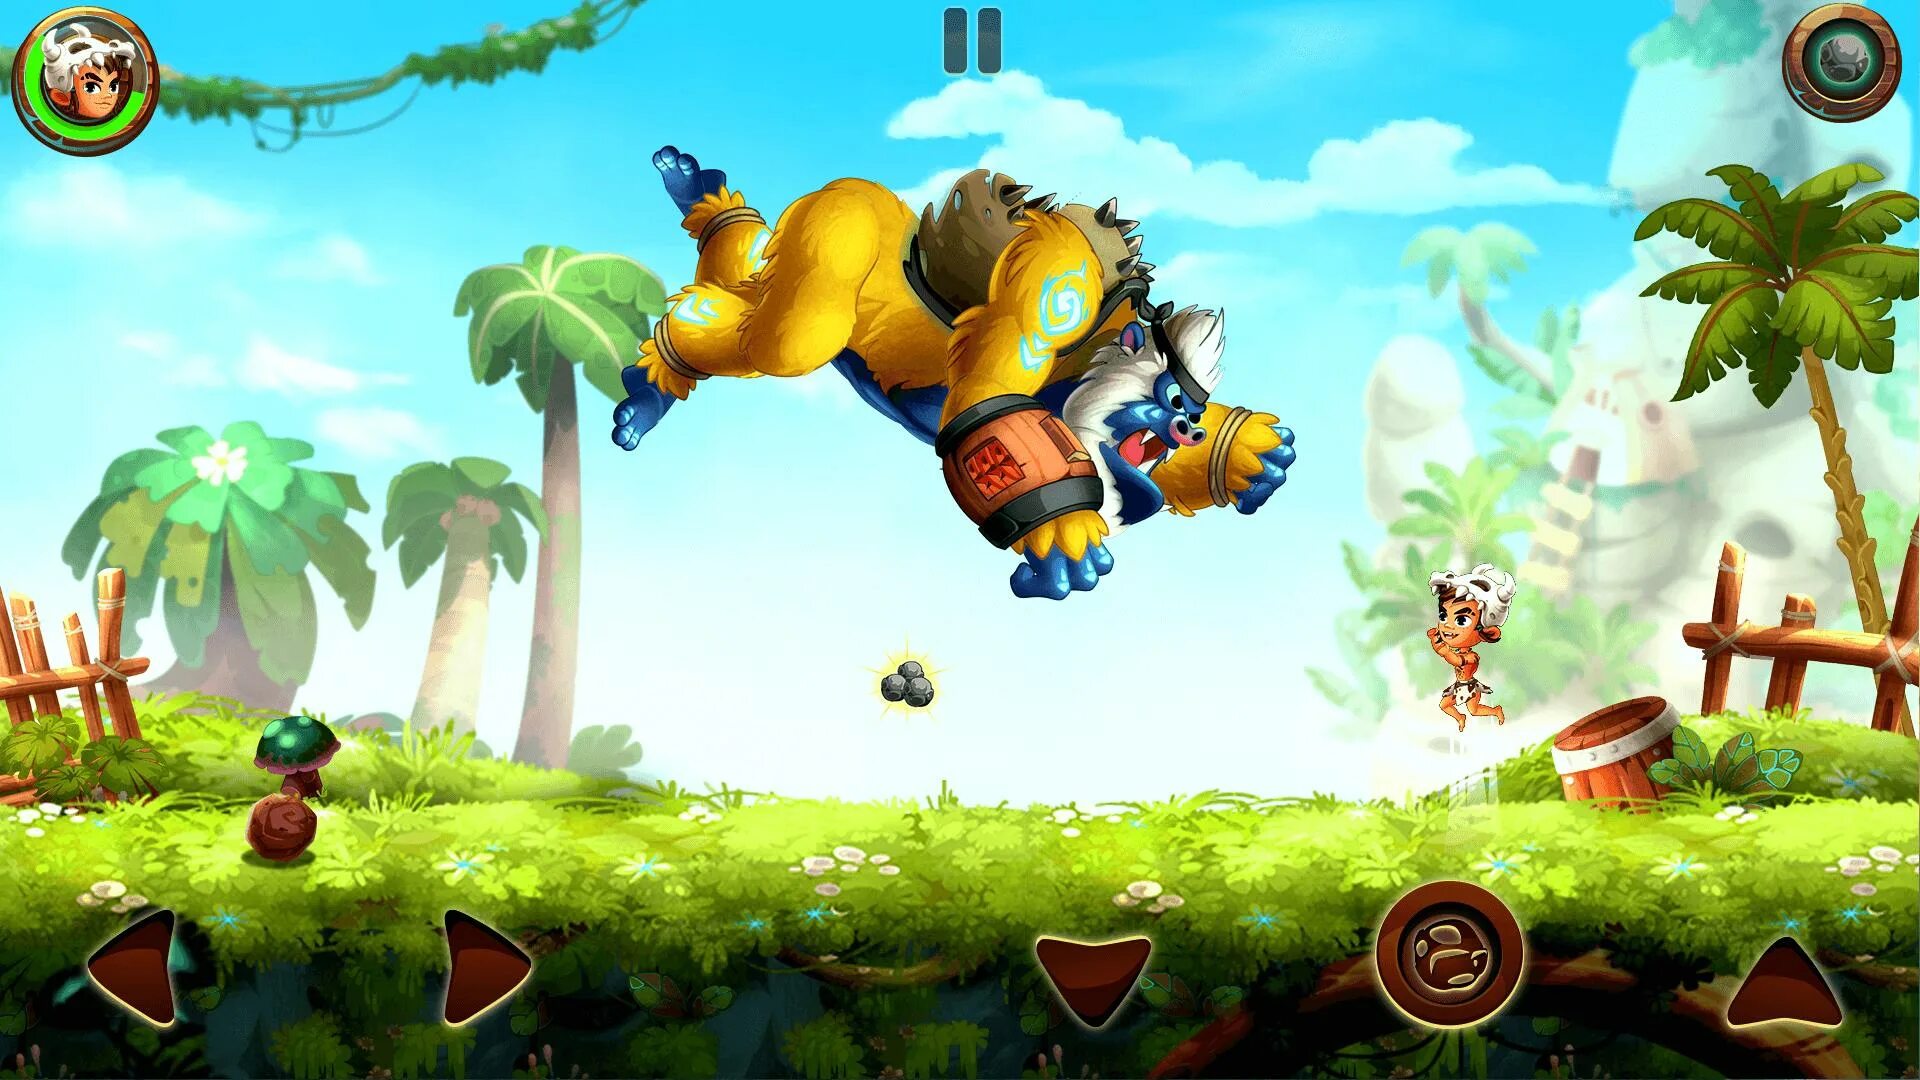 Игра Jungle Adventures 1. Боссы из игры Jungle Adventures 3. Джунгли Адвентурес 3. Приключения в джунглях пчела. Собирать лианы игры